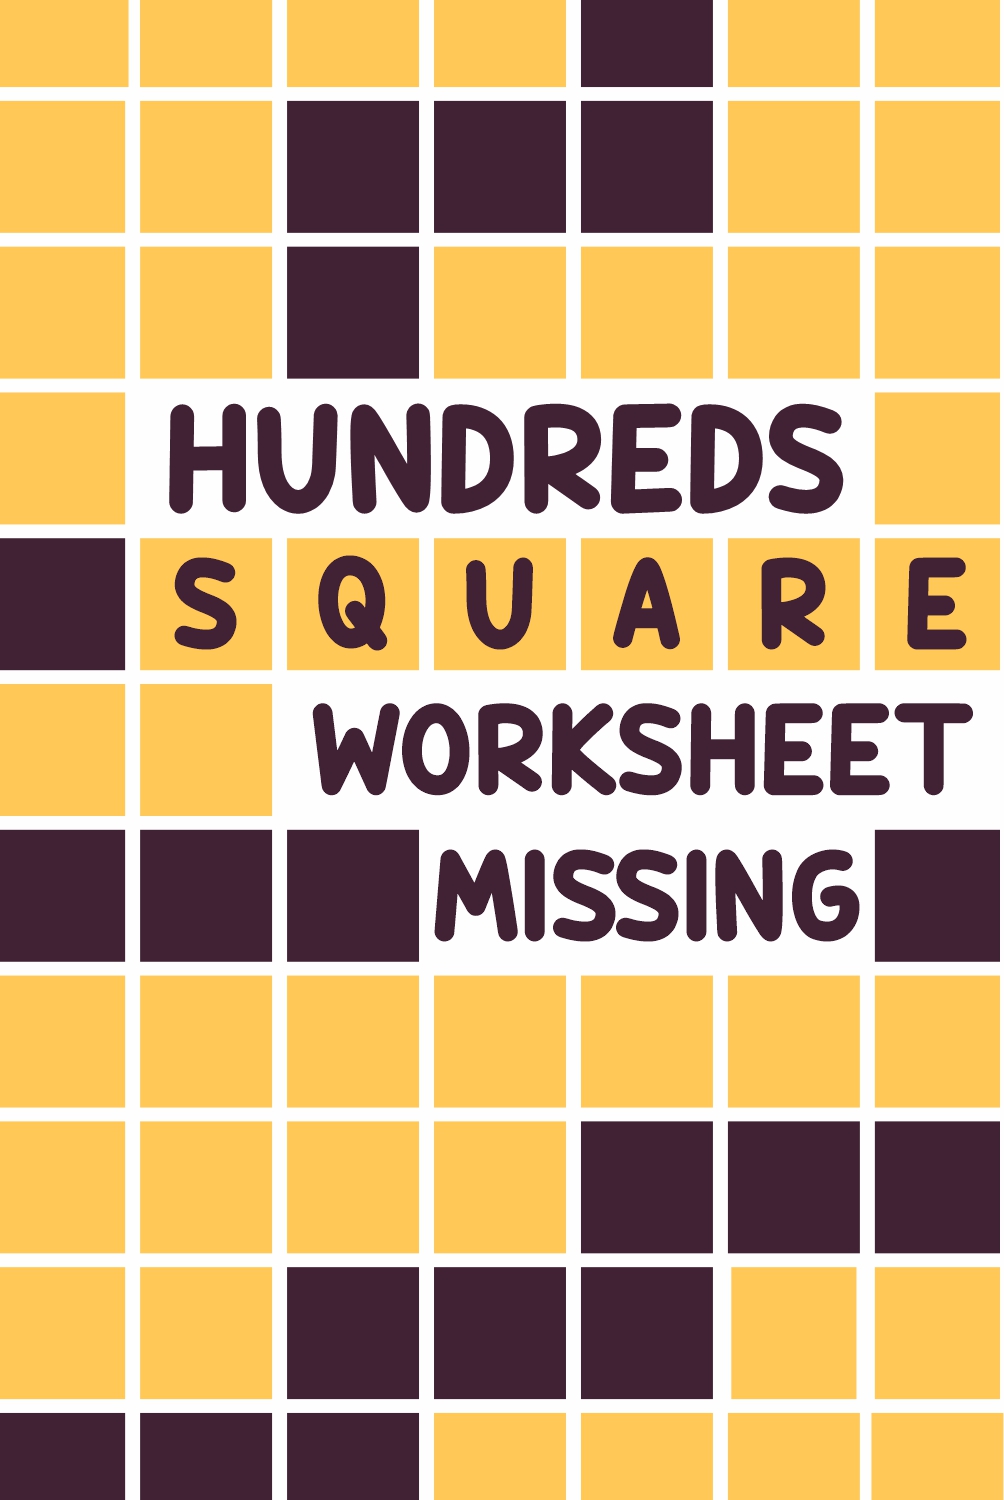 12 Images of Hundreds Square Worksheet Missing